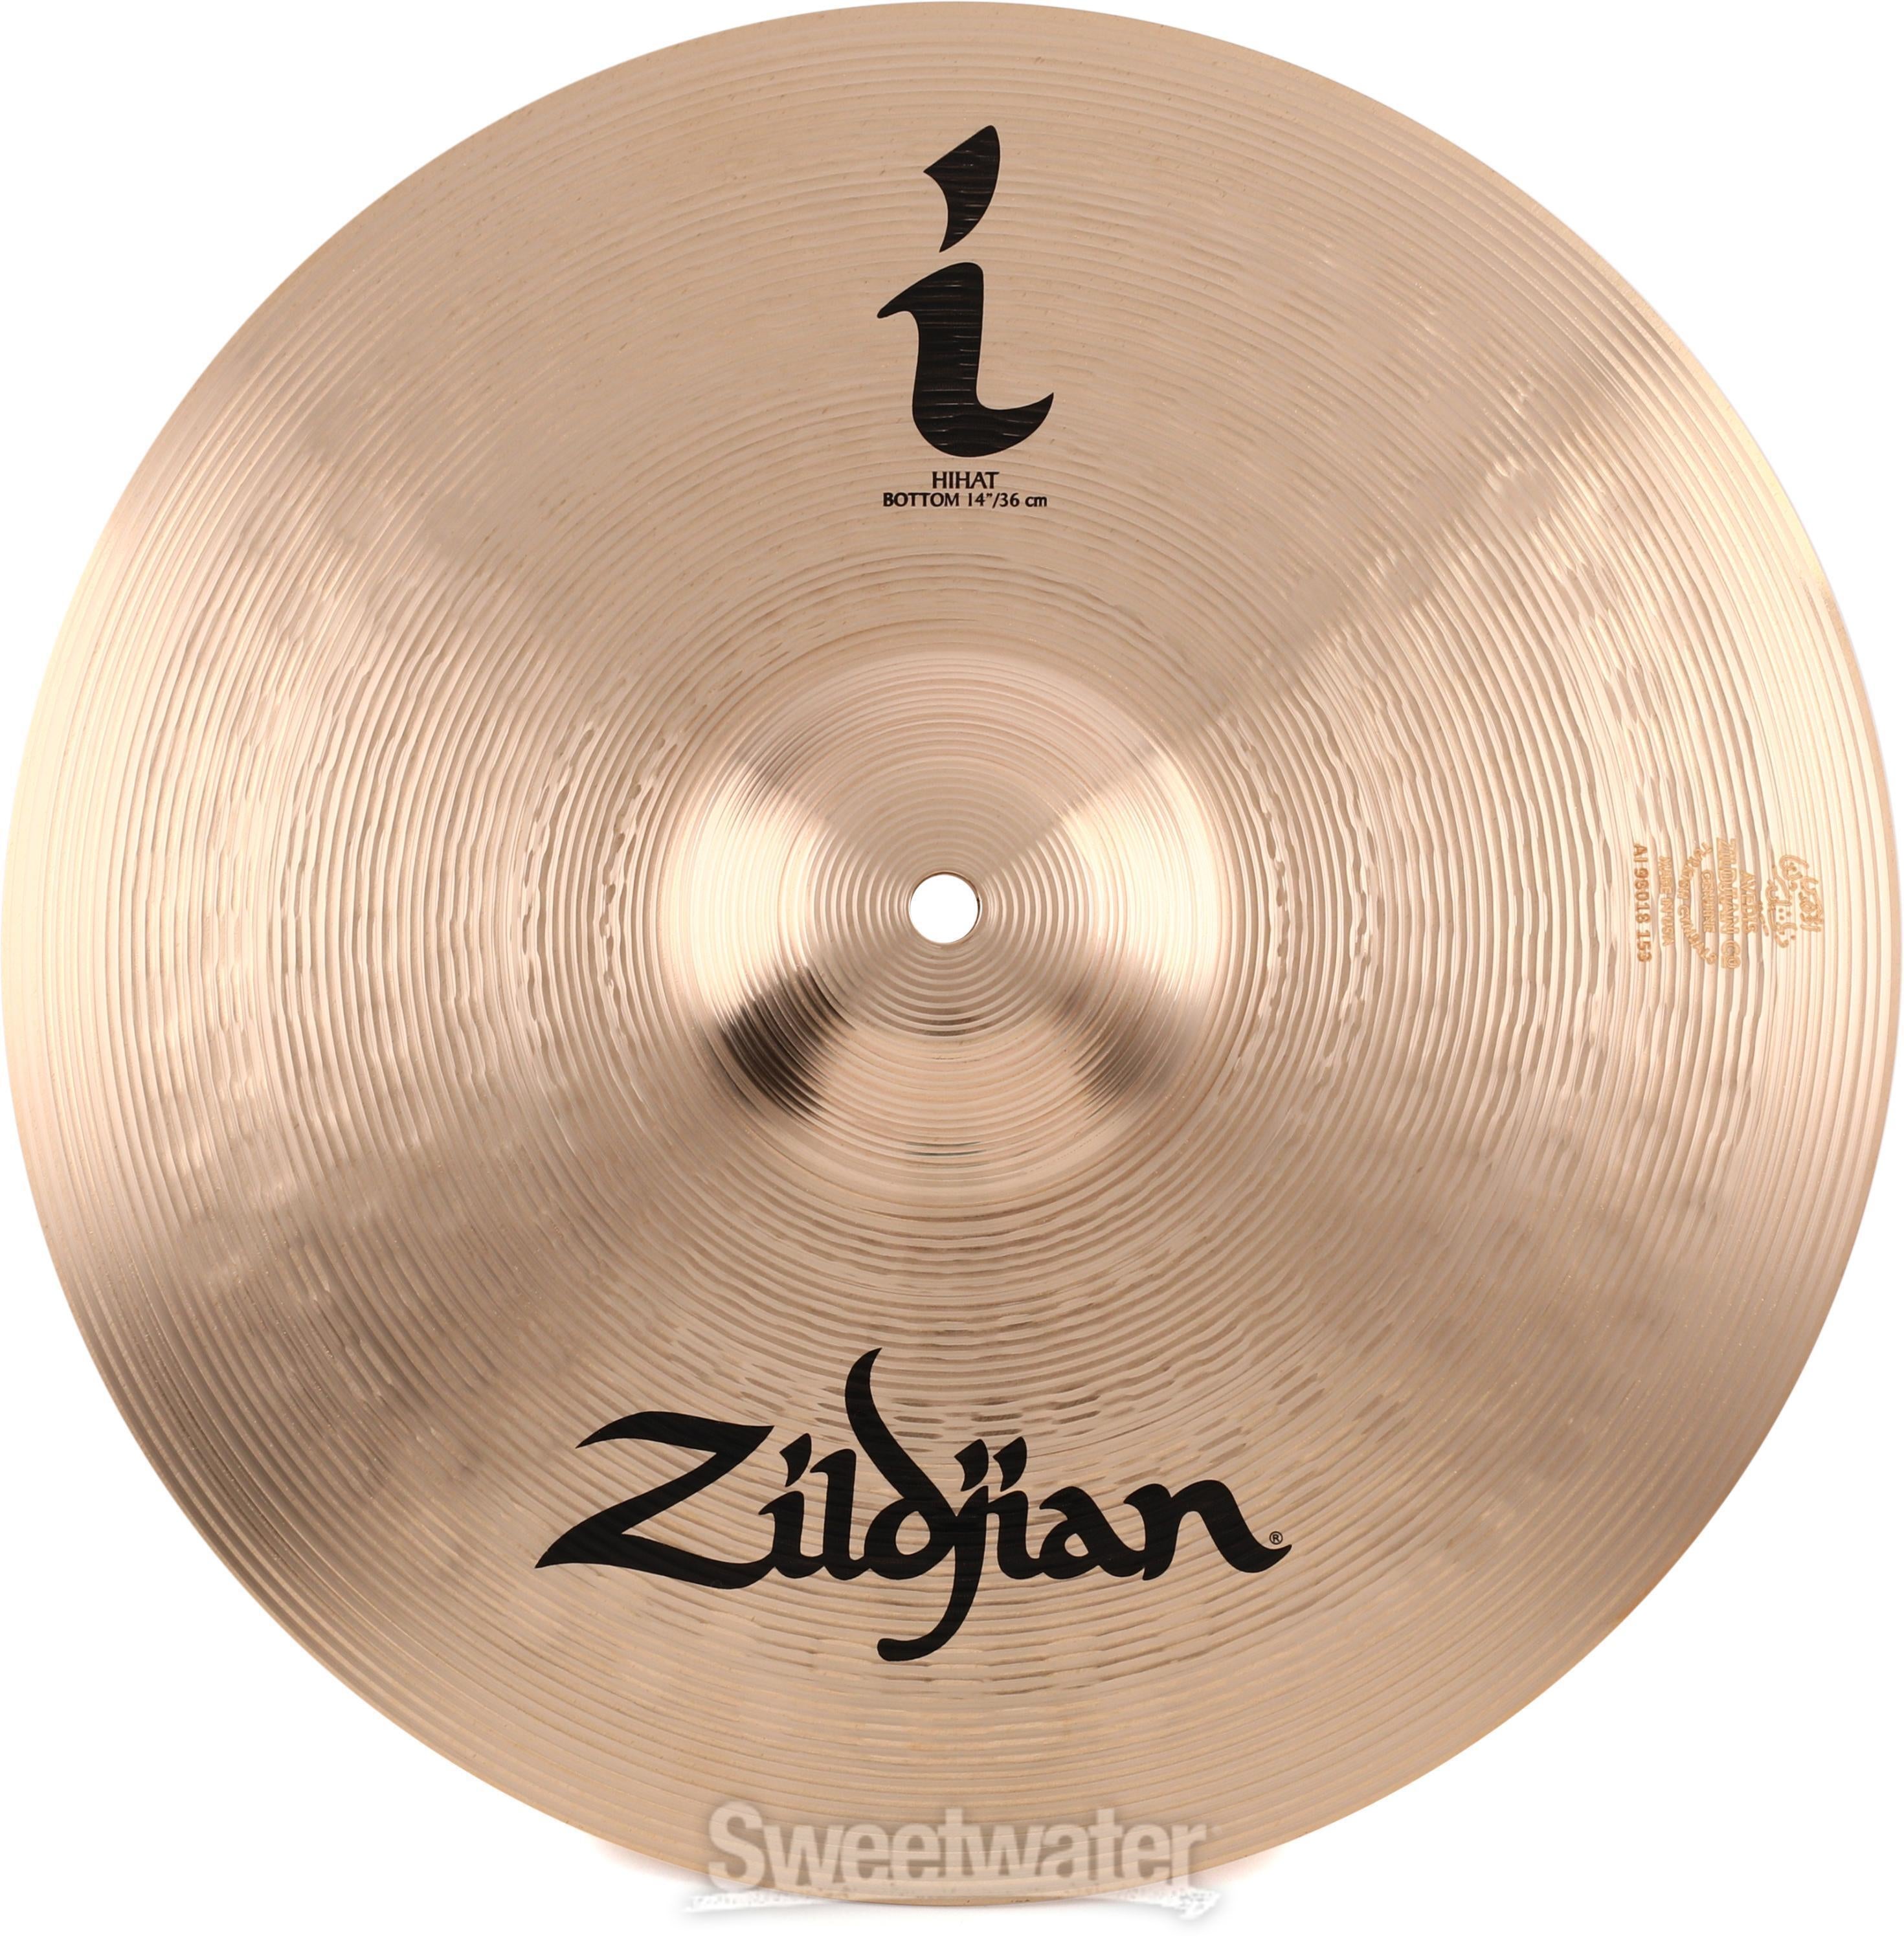 Zildjian 14 inch I Series Hi-hat Cymbals | Sweetwater